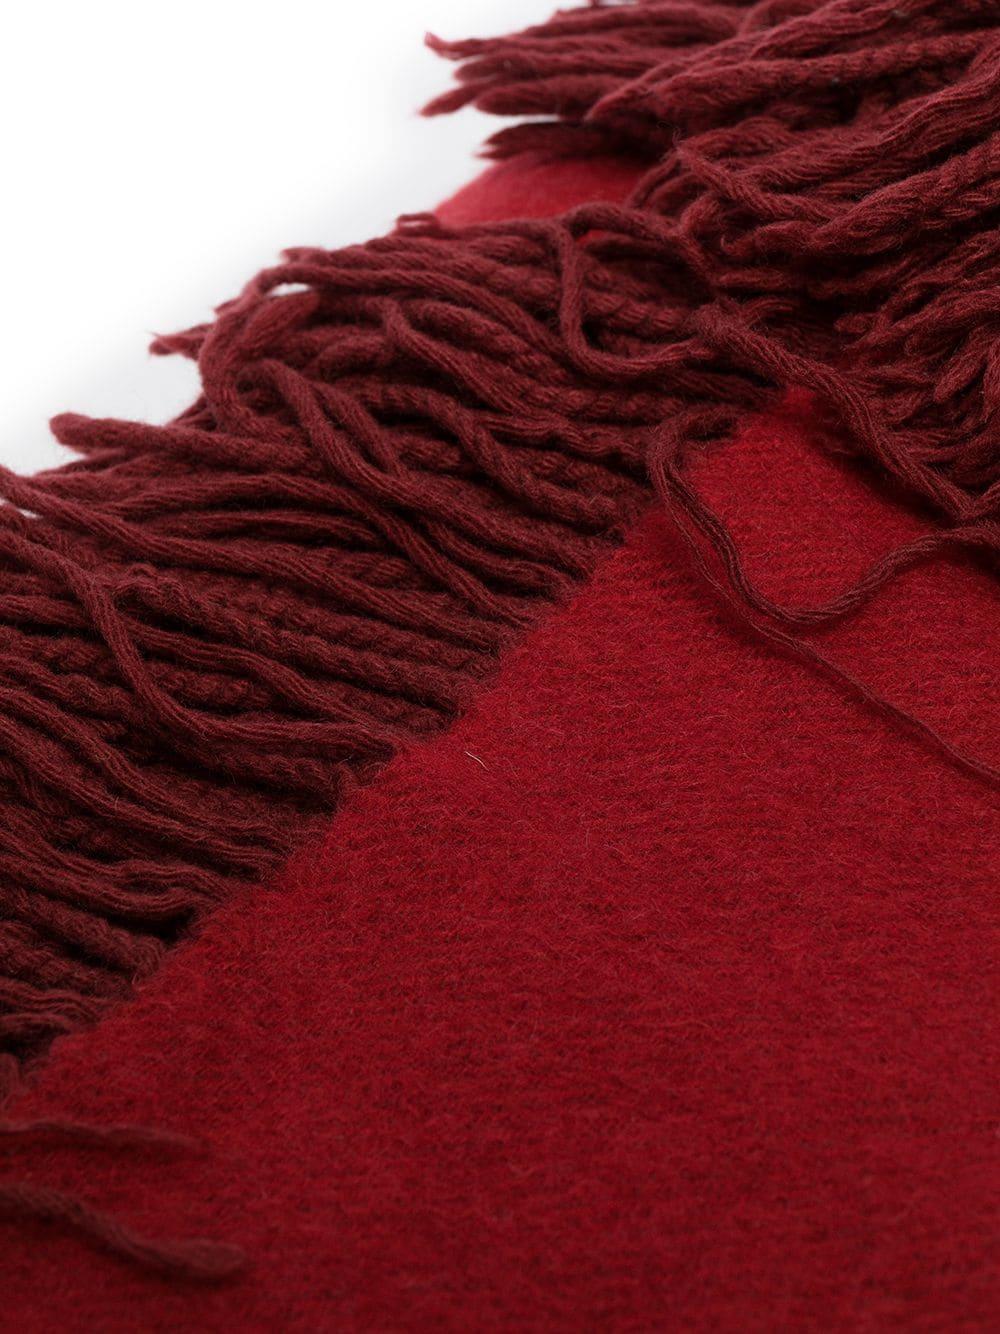 Diese Decke von Chanel ist aus luxuriösem Kaschmir in zwei wunderschönen, warmen Rottönen gefertigt und mit dem Chanel-Schriftzug versehen. Gemütlich und weich, aber dennoch ein seltenes Stück Zuhause.

Farbe: Rot

Abmessungen: Länge 200 cm, Breite